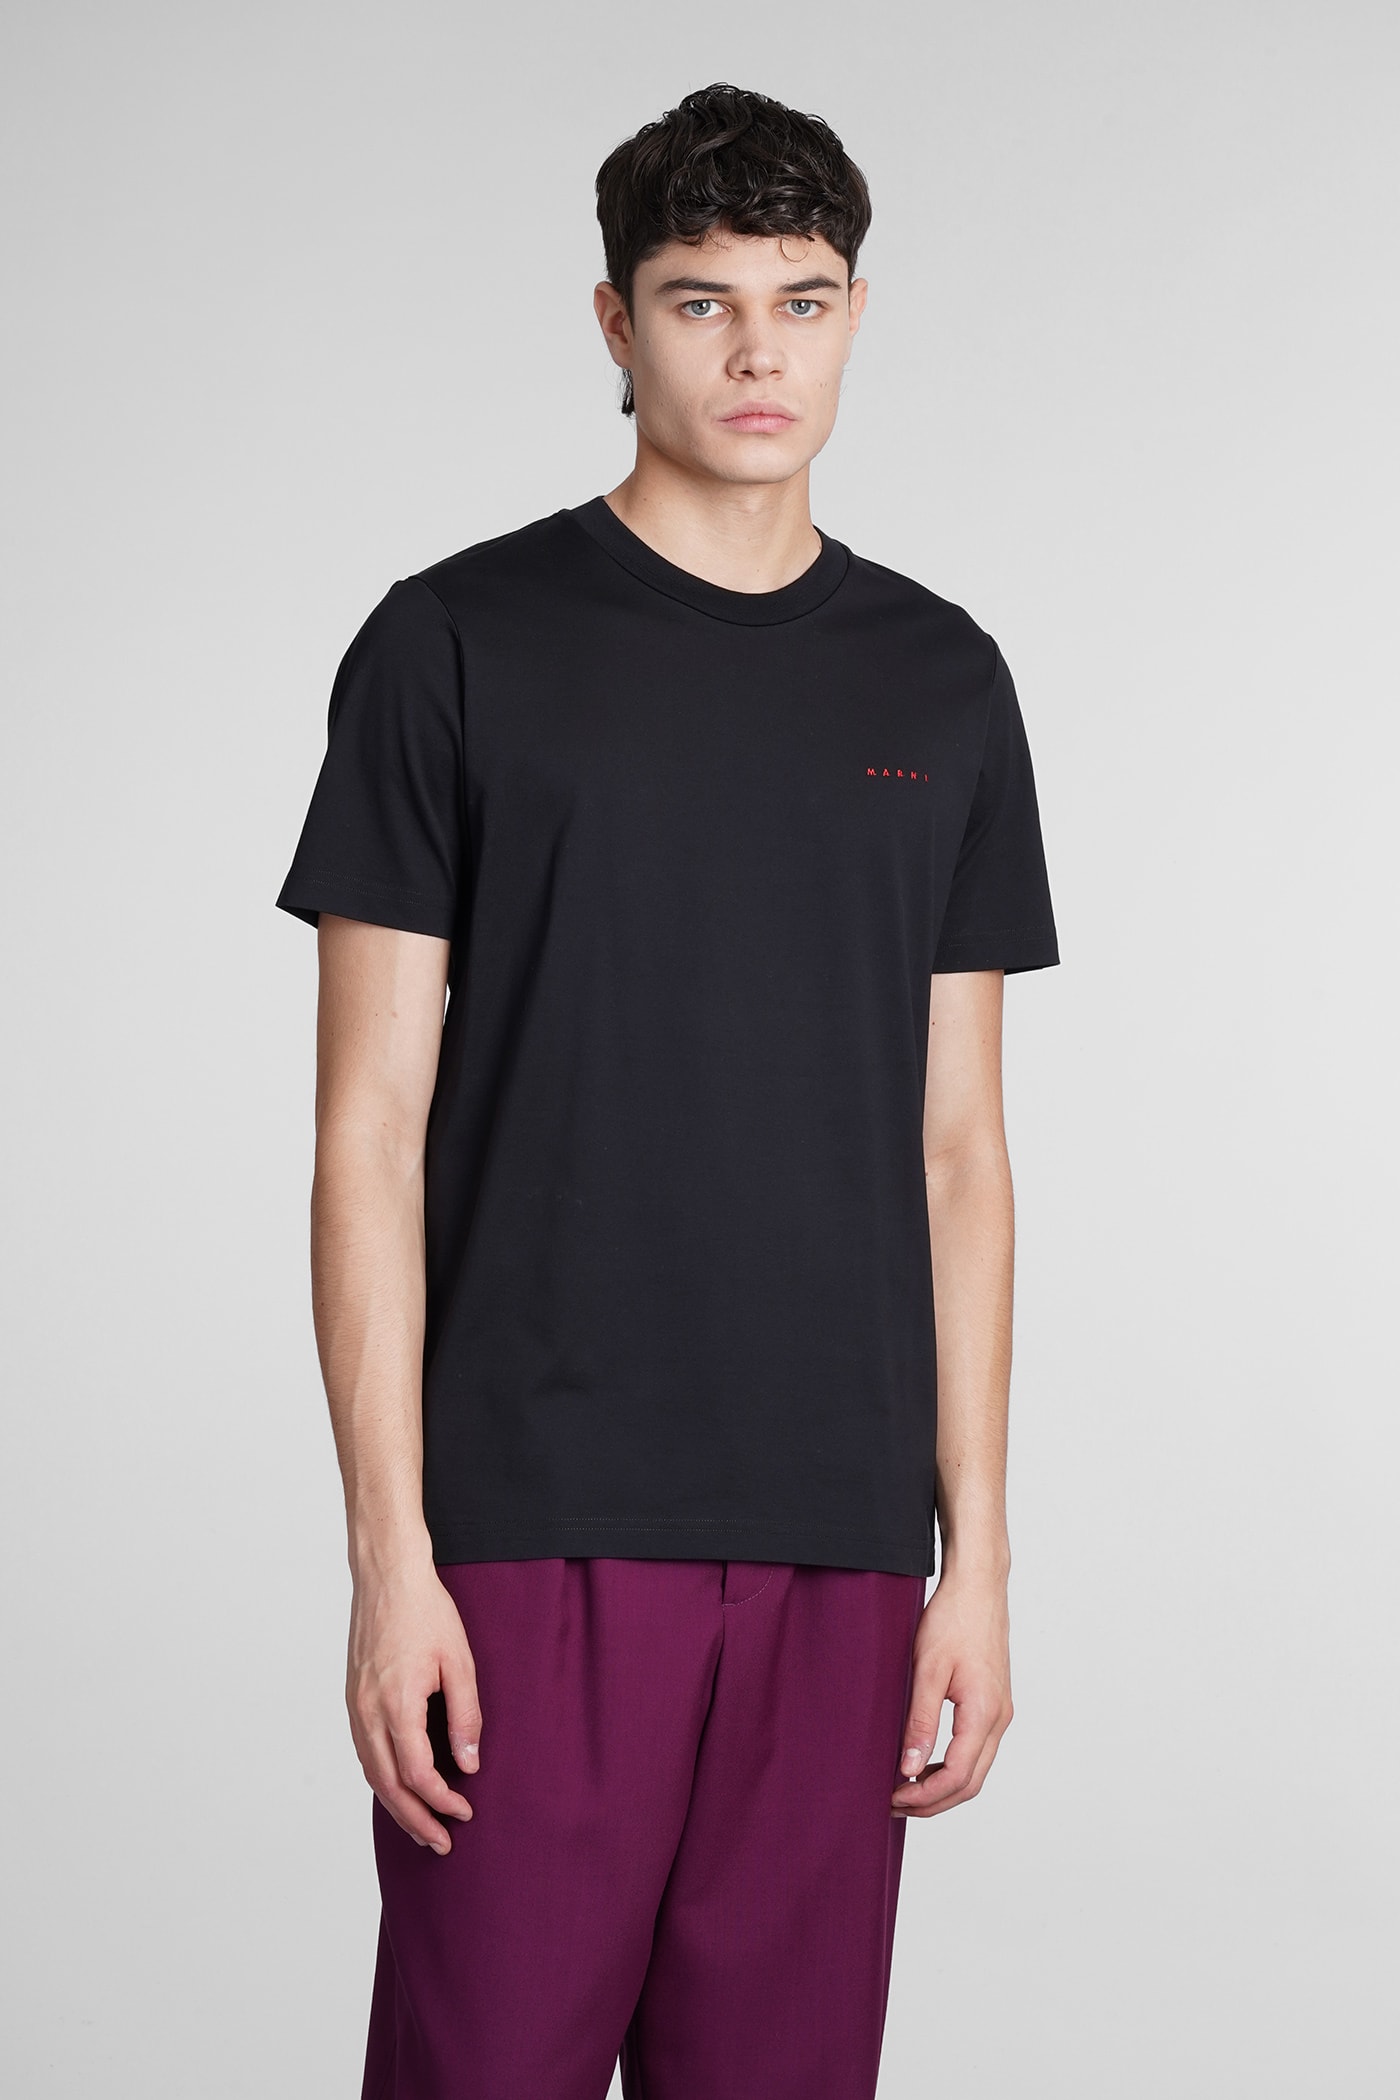 Marni T-shirt In Black Cotton Marni